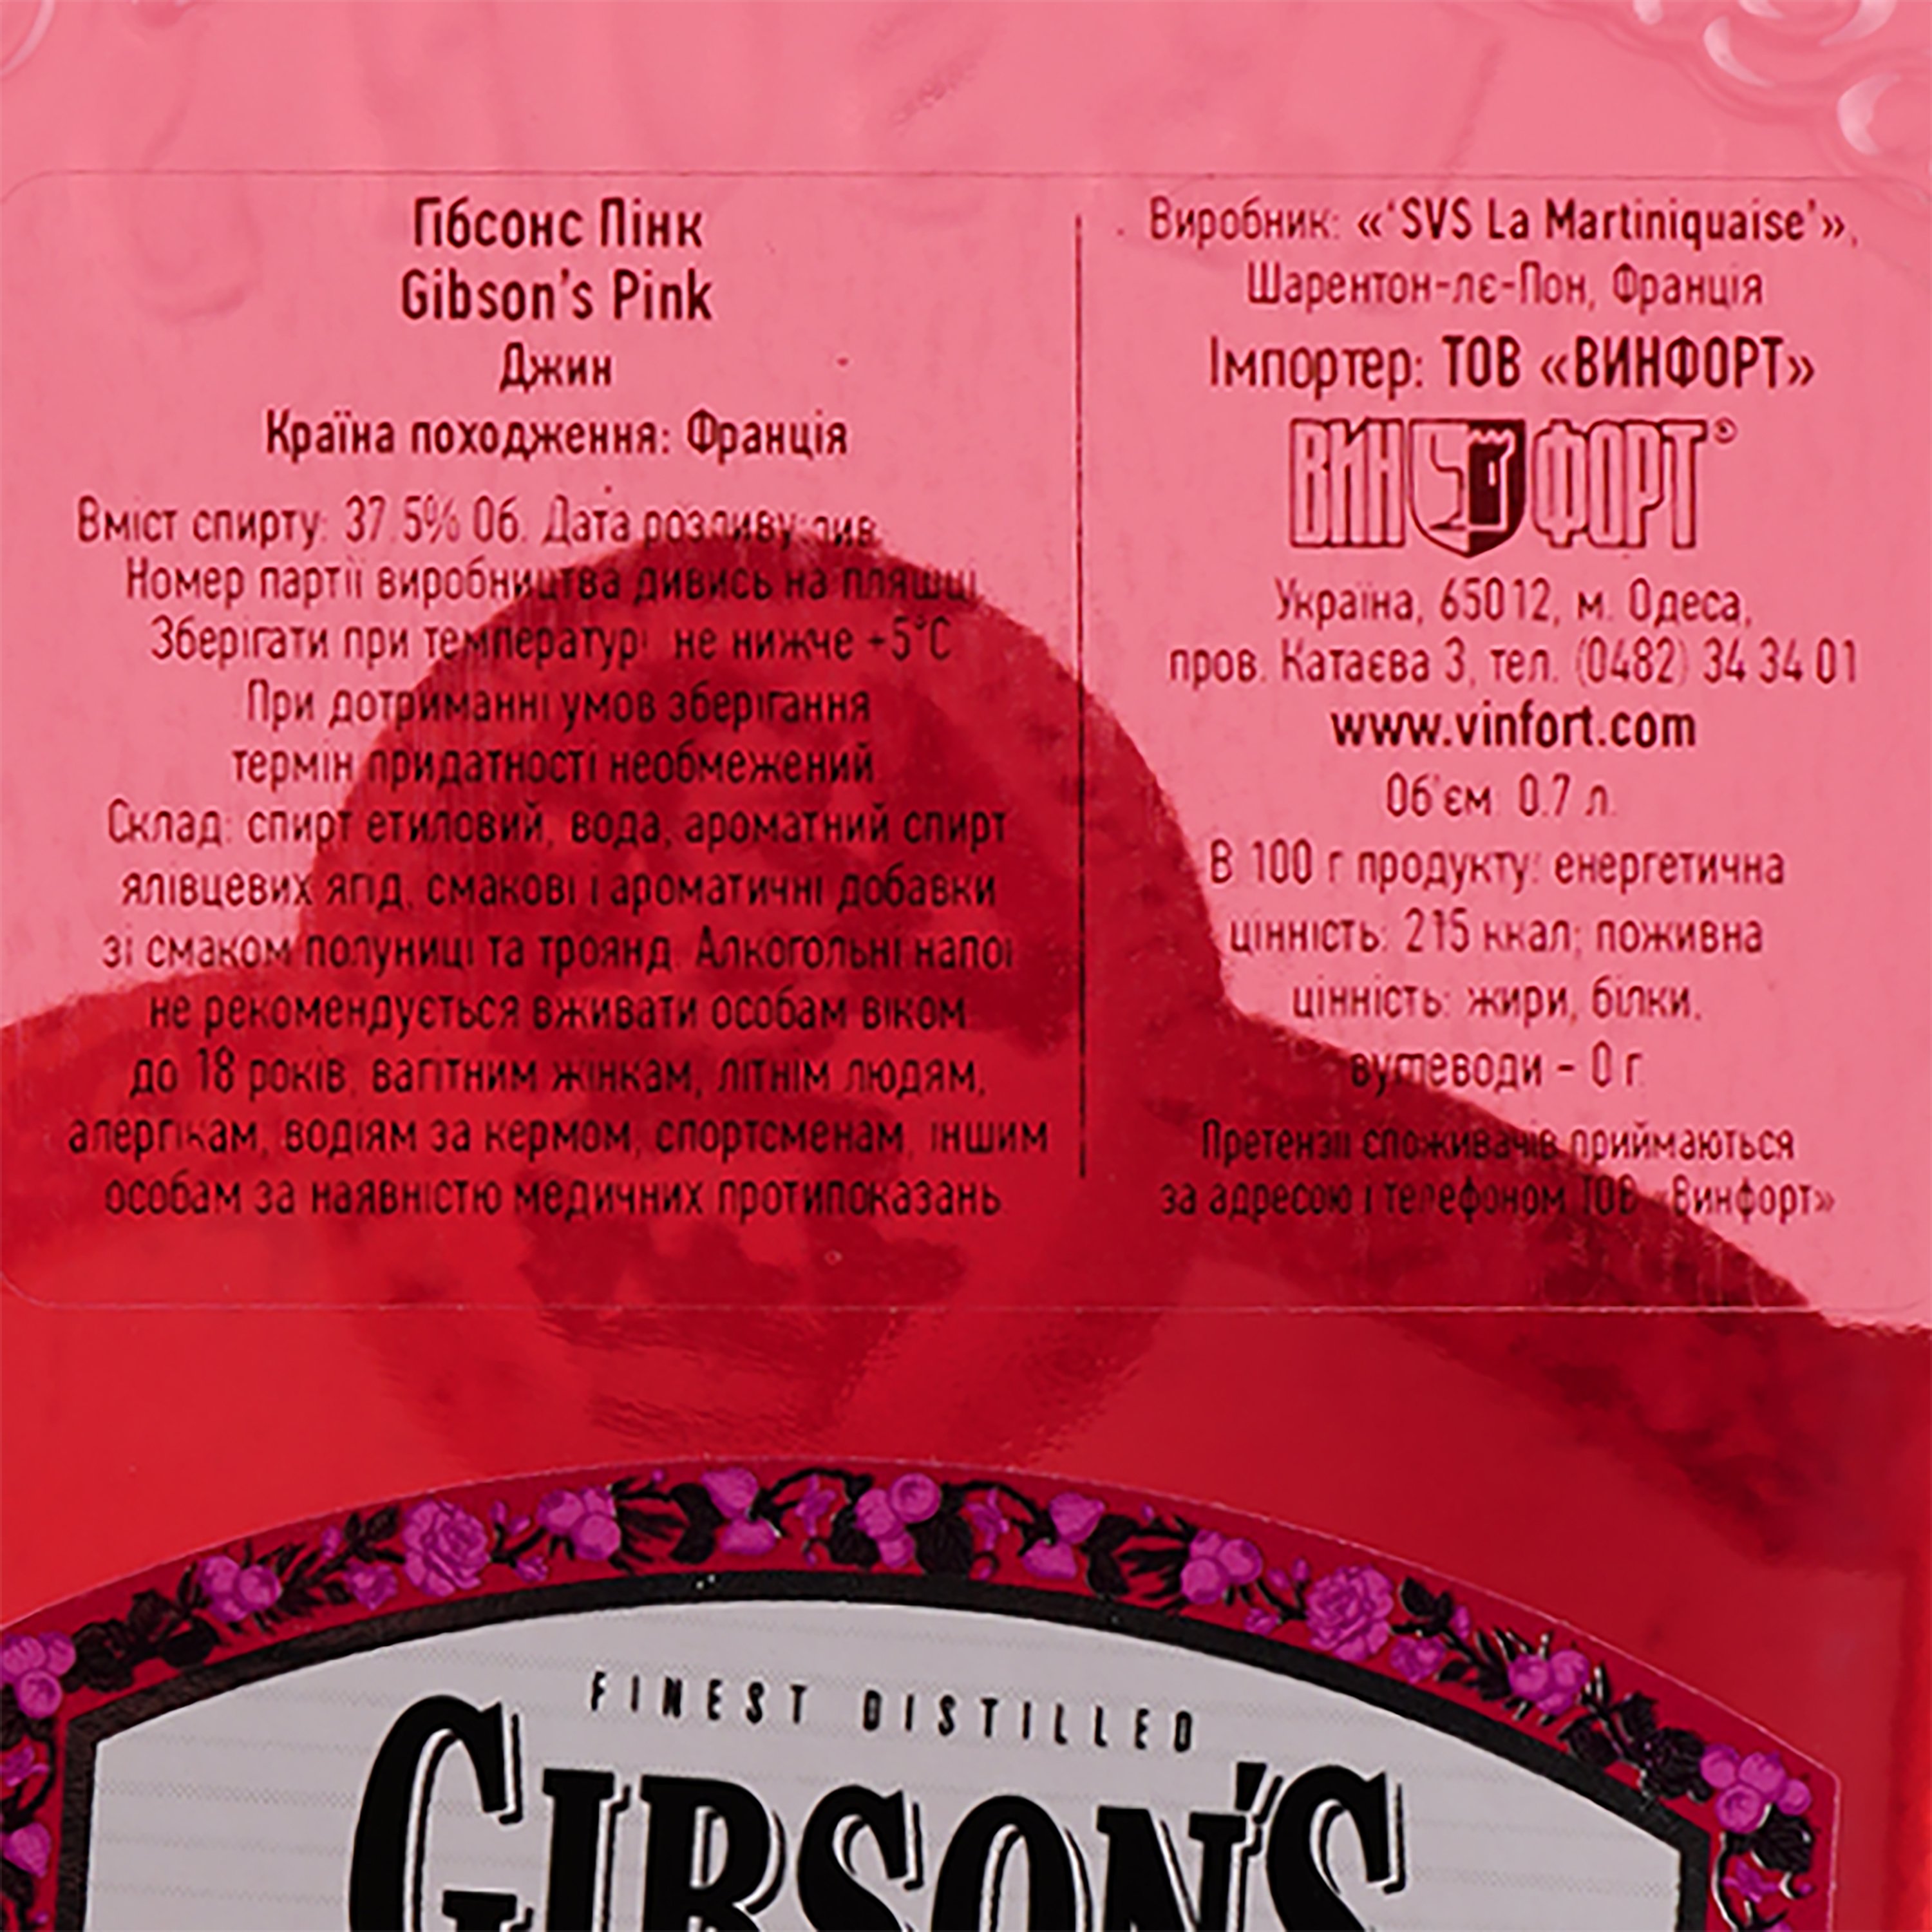 Джин Gibson's Pink 37.5% 0.7 л - фото 5